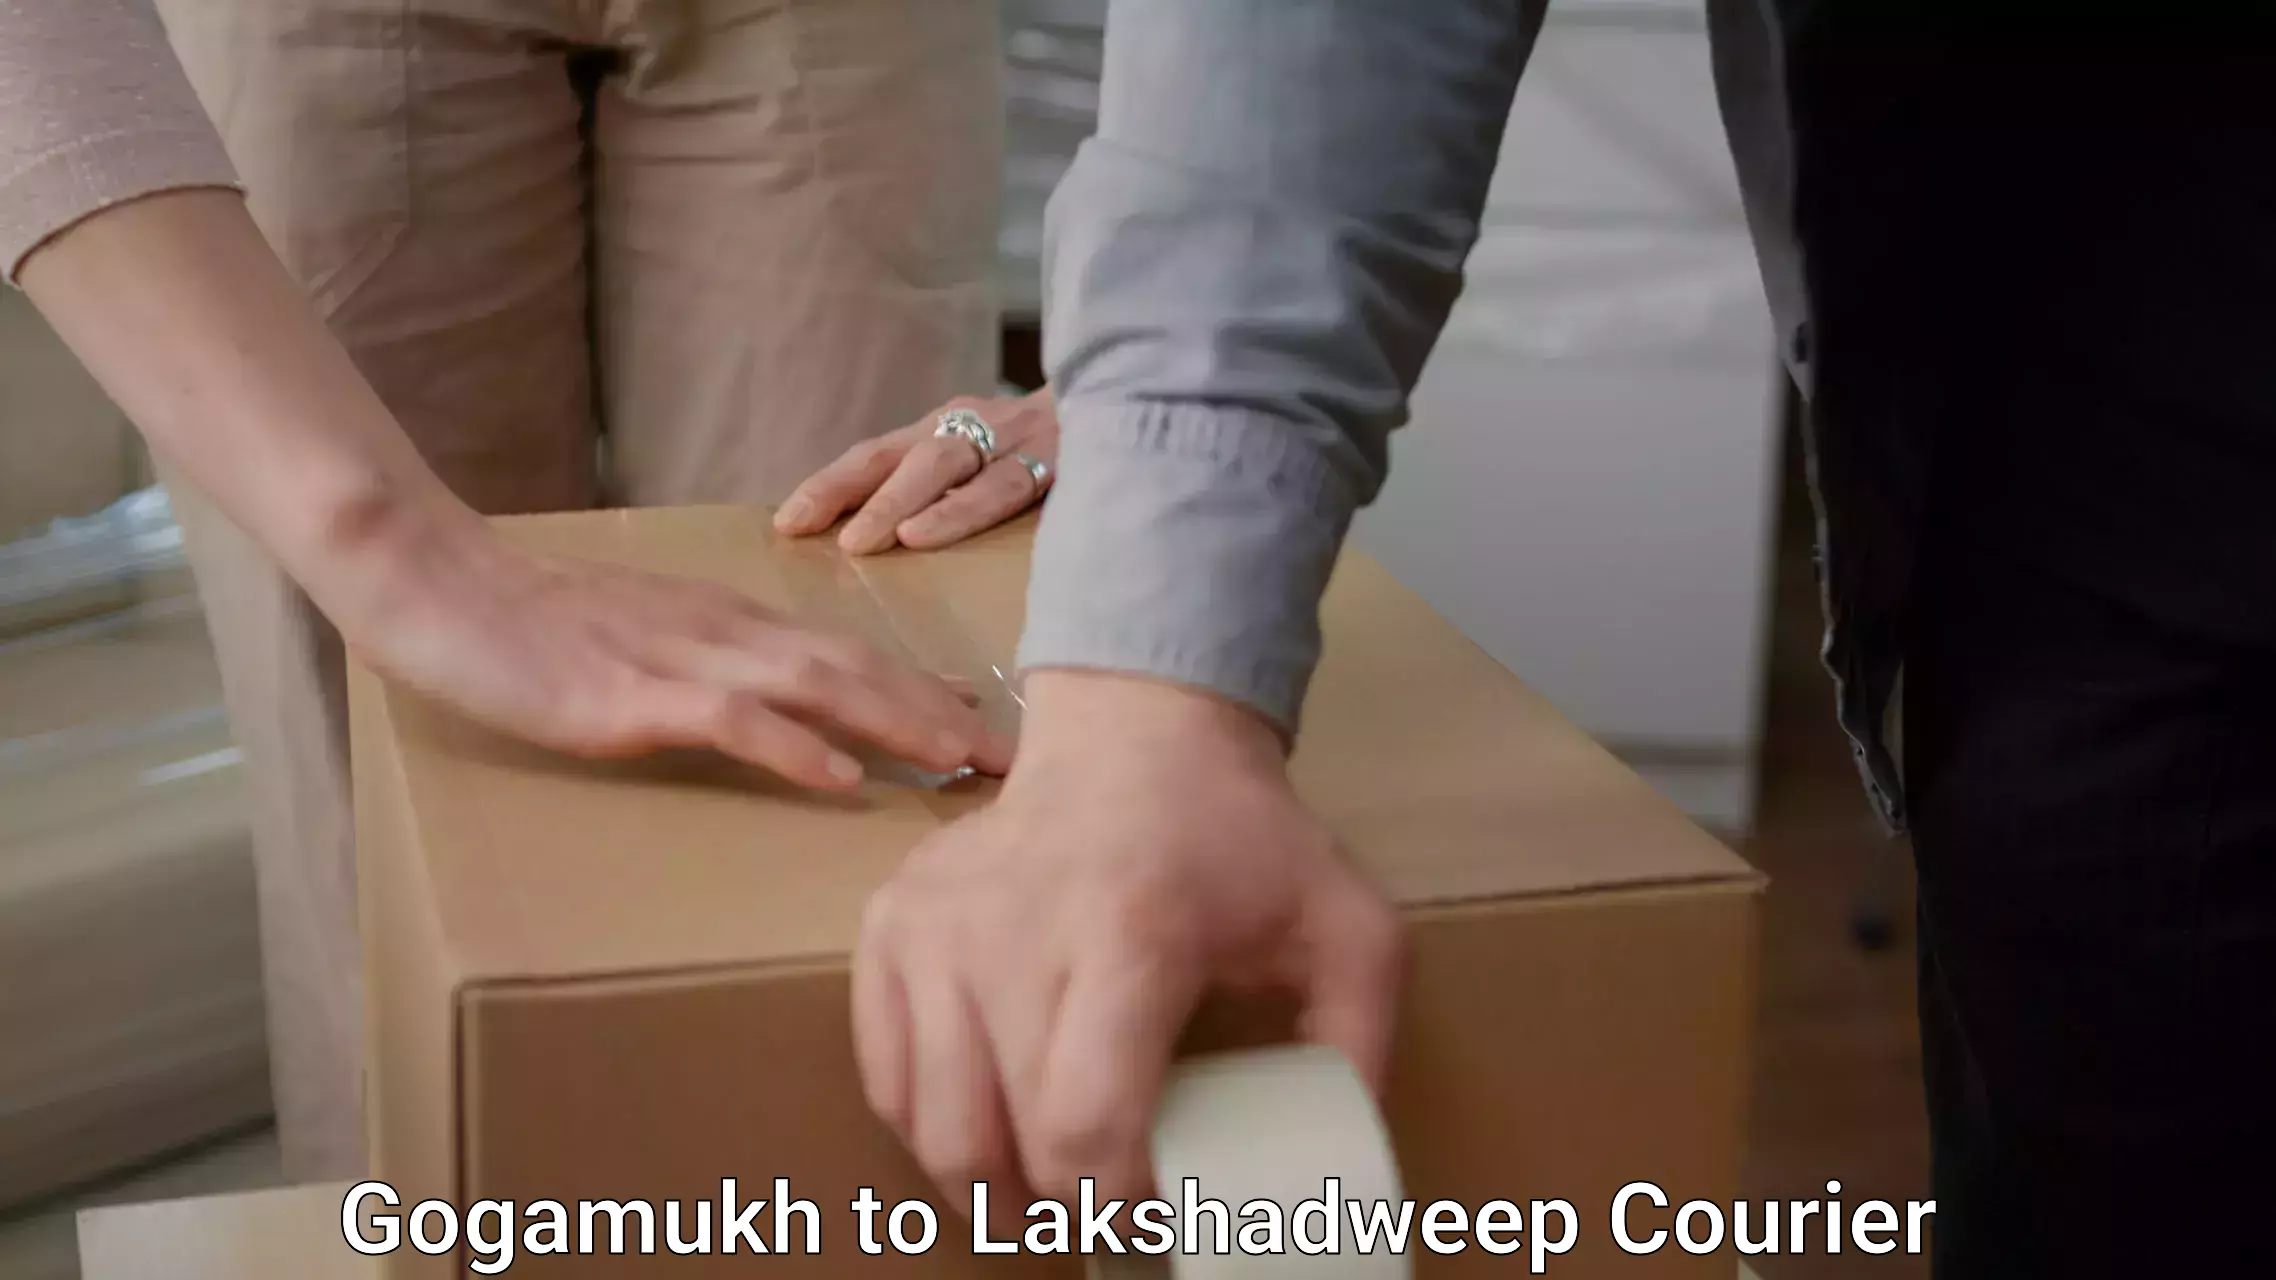 Quality moving company Gogamukh to Lakshadweep